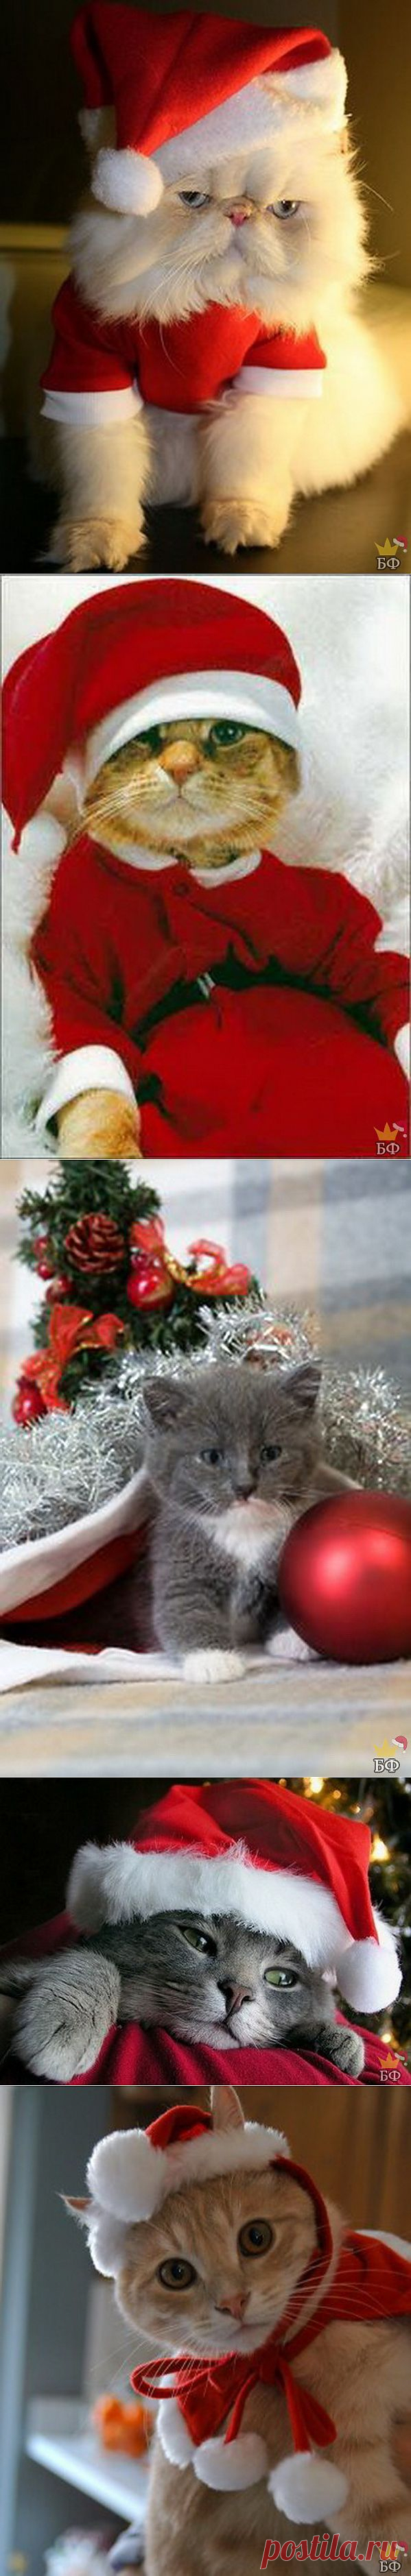 Новогодние коты » BezFishki.net - Страницы позитива. Ежедневно обновляемый развлекательный портал. Самые лучшие картинки и фото. Без фишки нет